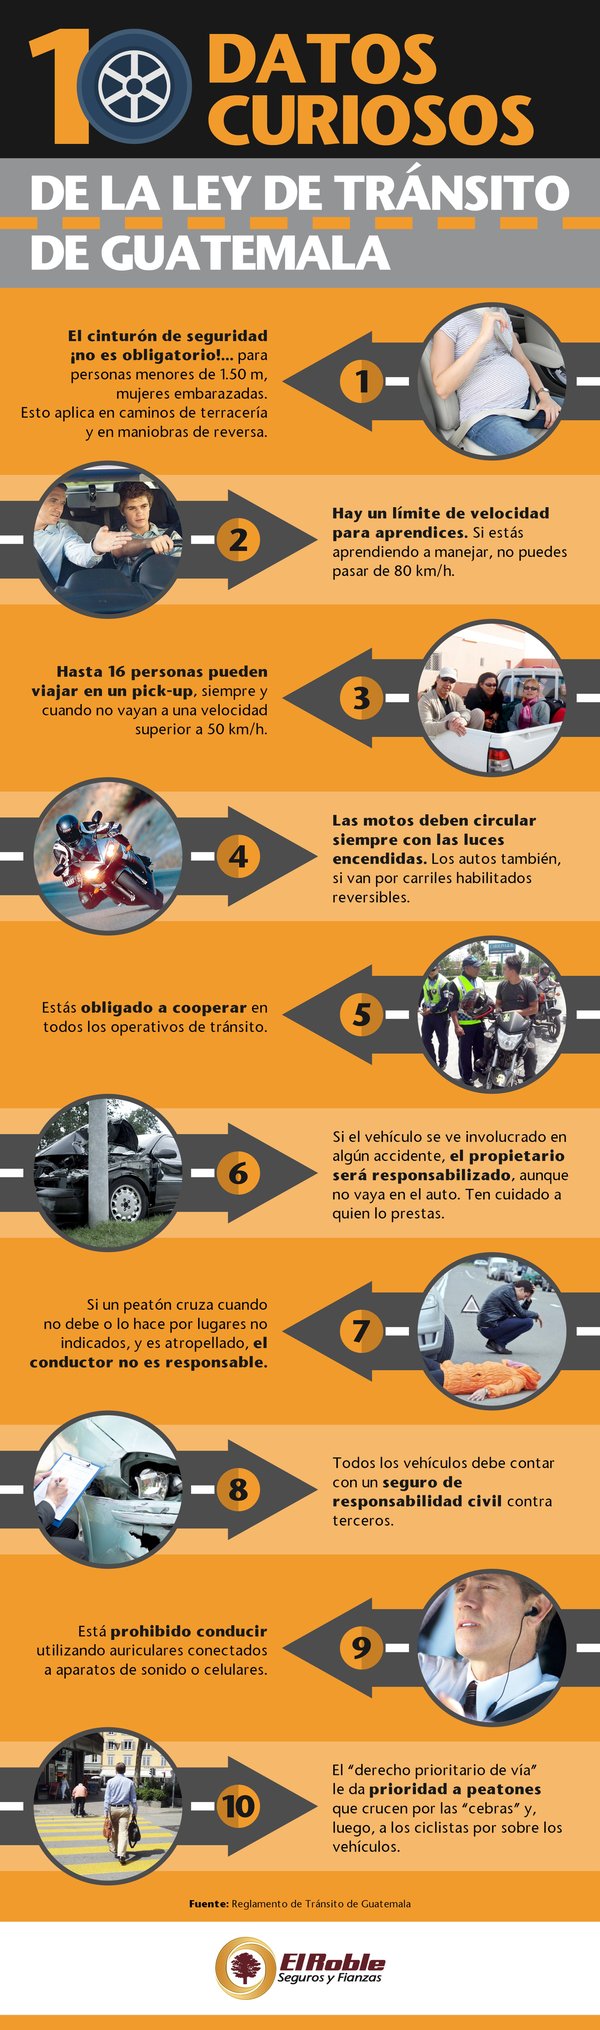 10 Datos curiosos de la ley de tránsito de Guatemala